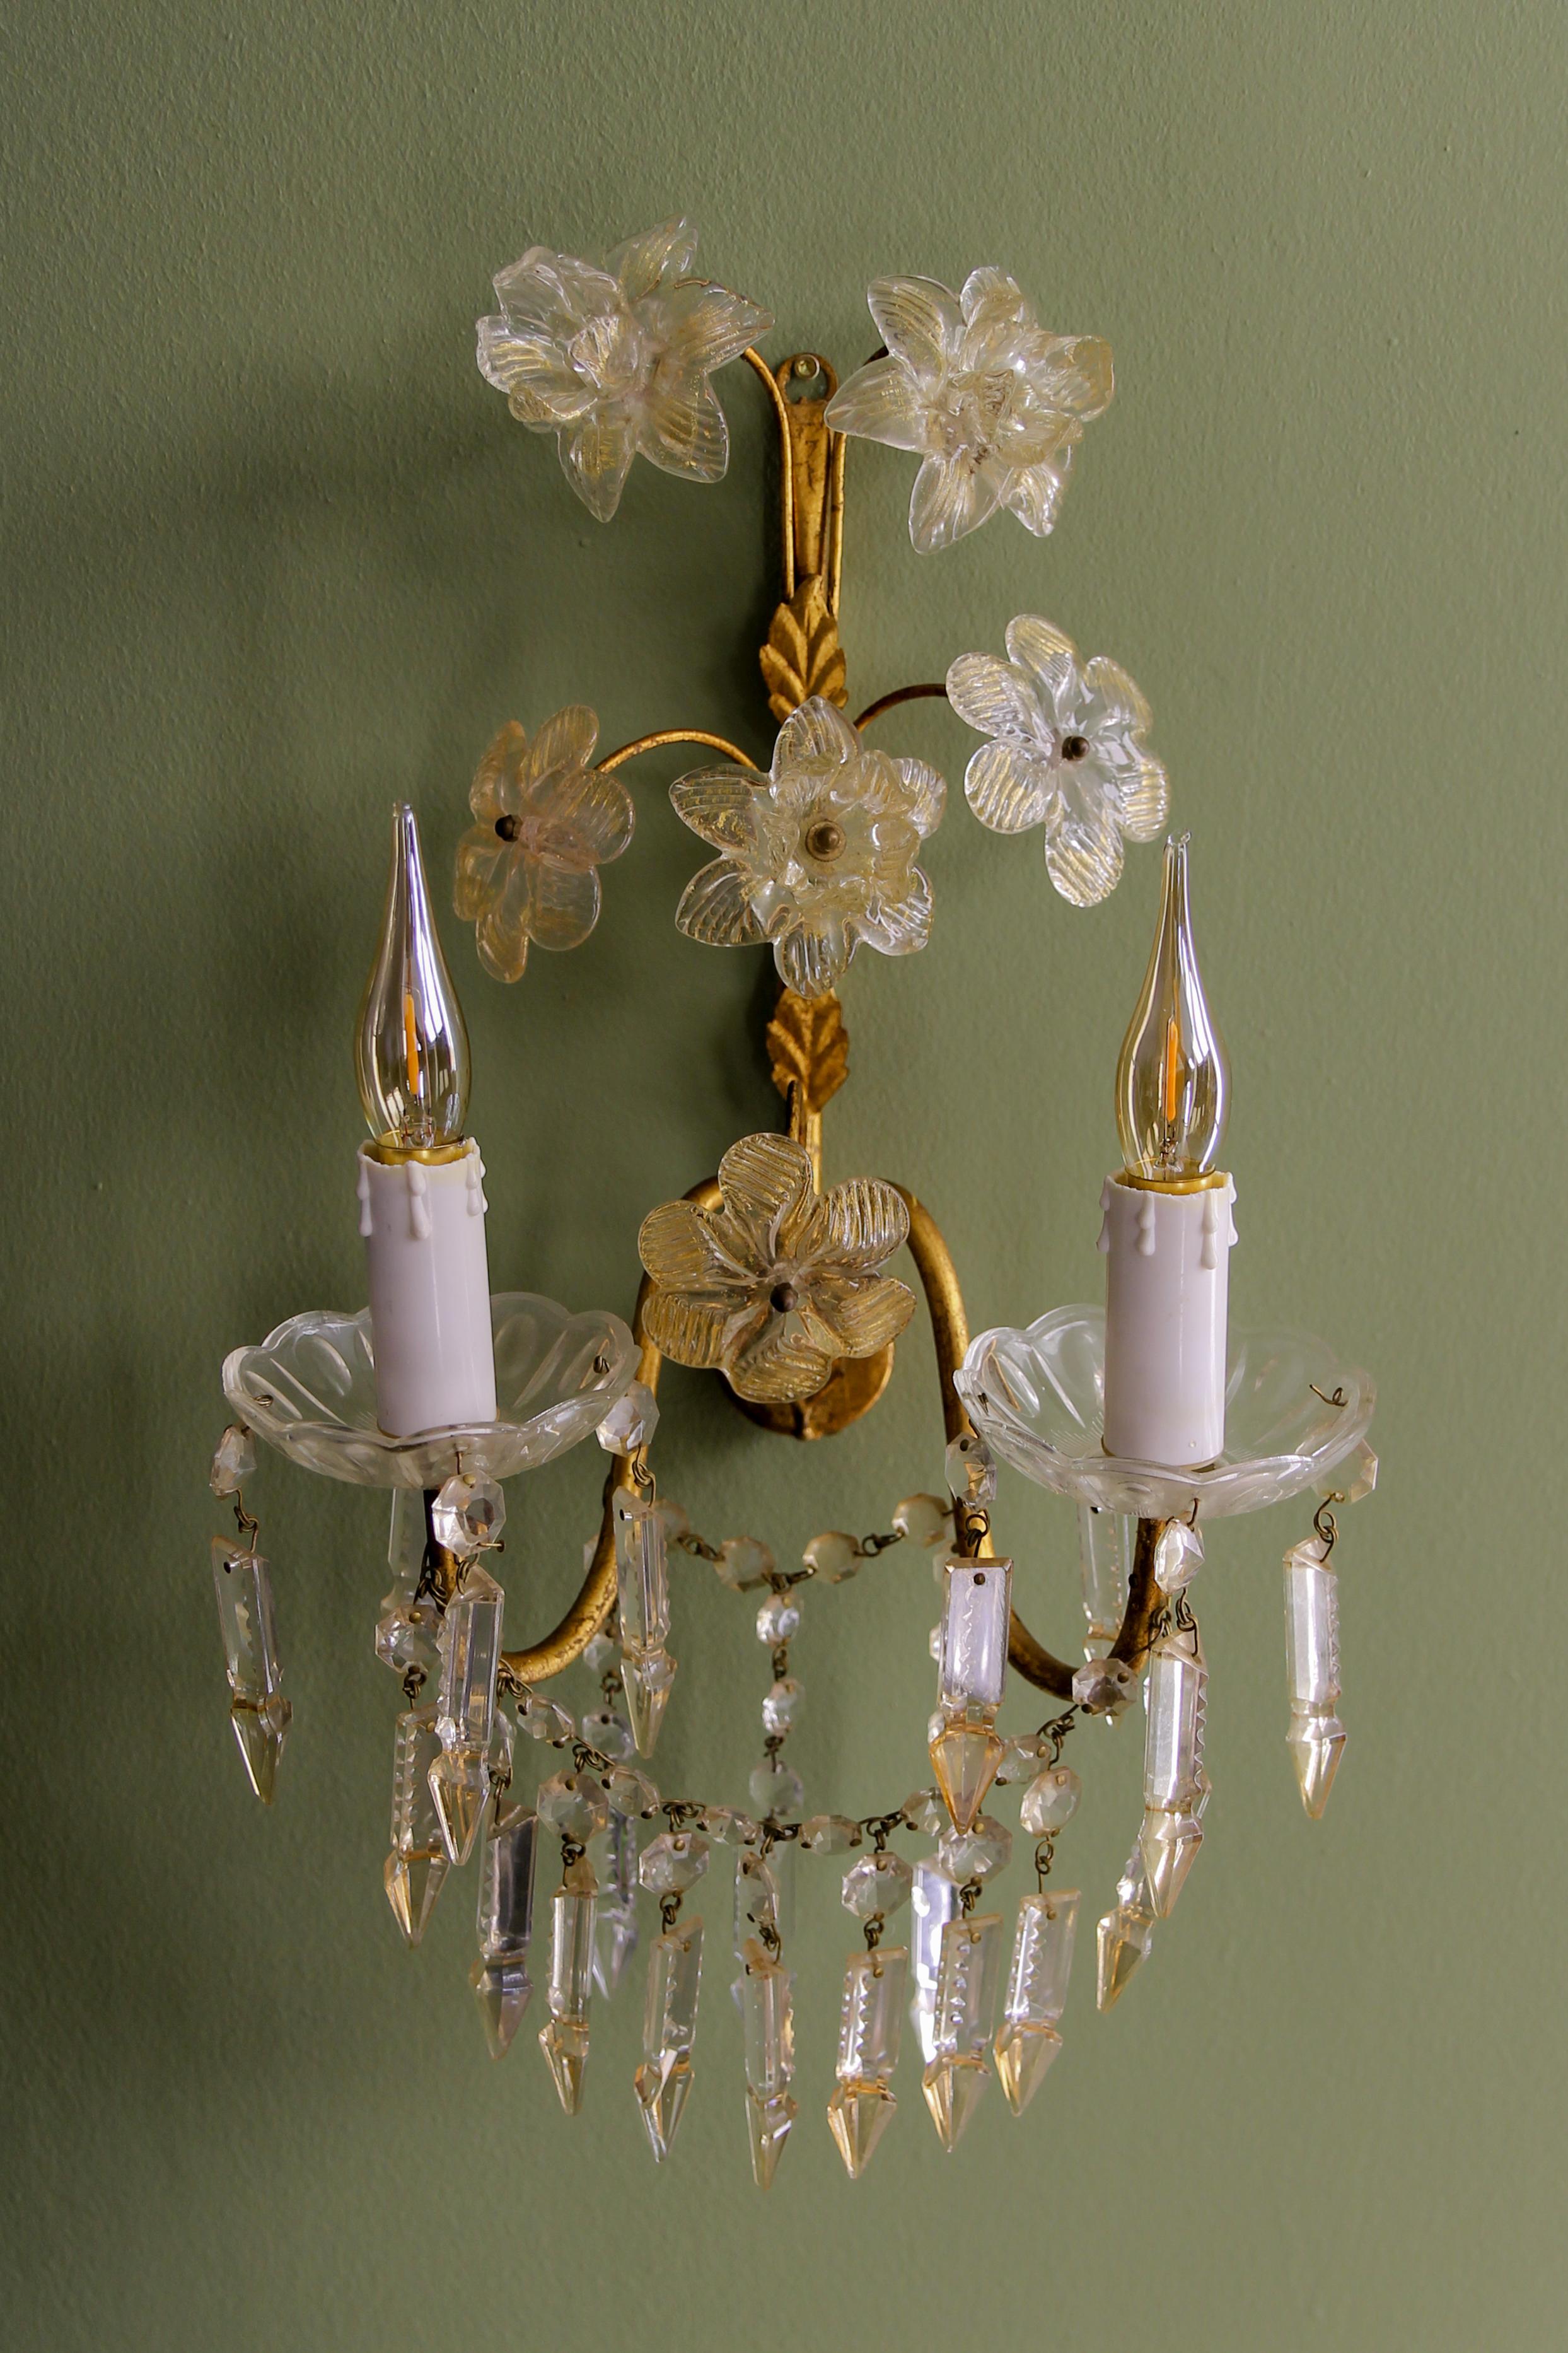 Italienische zweiflammige Leuchte aus vergoldetem Metall mit Blumen und Prismen aus Kristallglas, ca. 1970er Jahre.
Diese schöne Wandleuchte besteht aus einem vergoldeten Metallrahmen mit Blättern und zwei Armen, die jeweils mit einer Glasscheibe